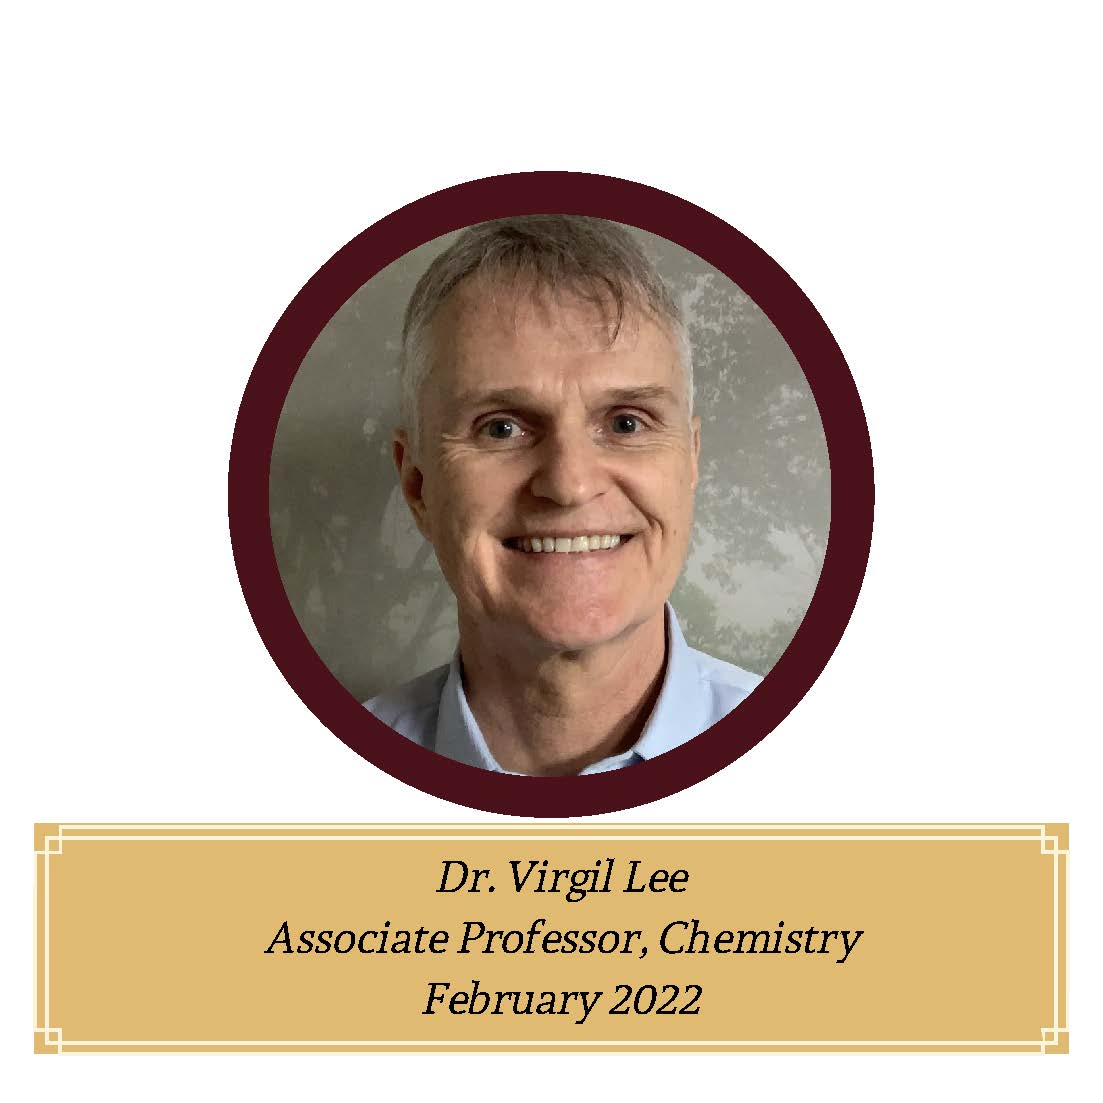 Dr. Virgil Lee